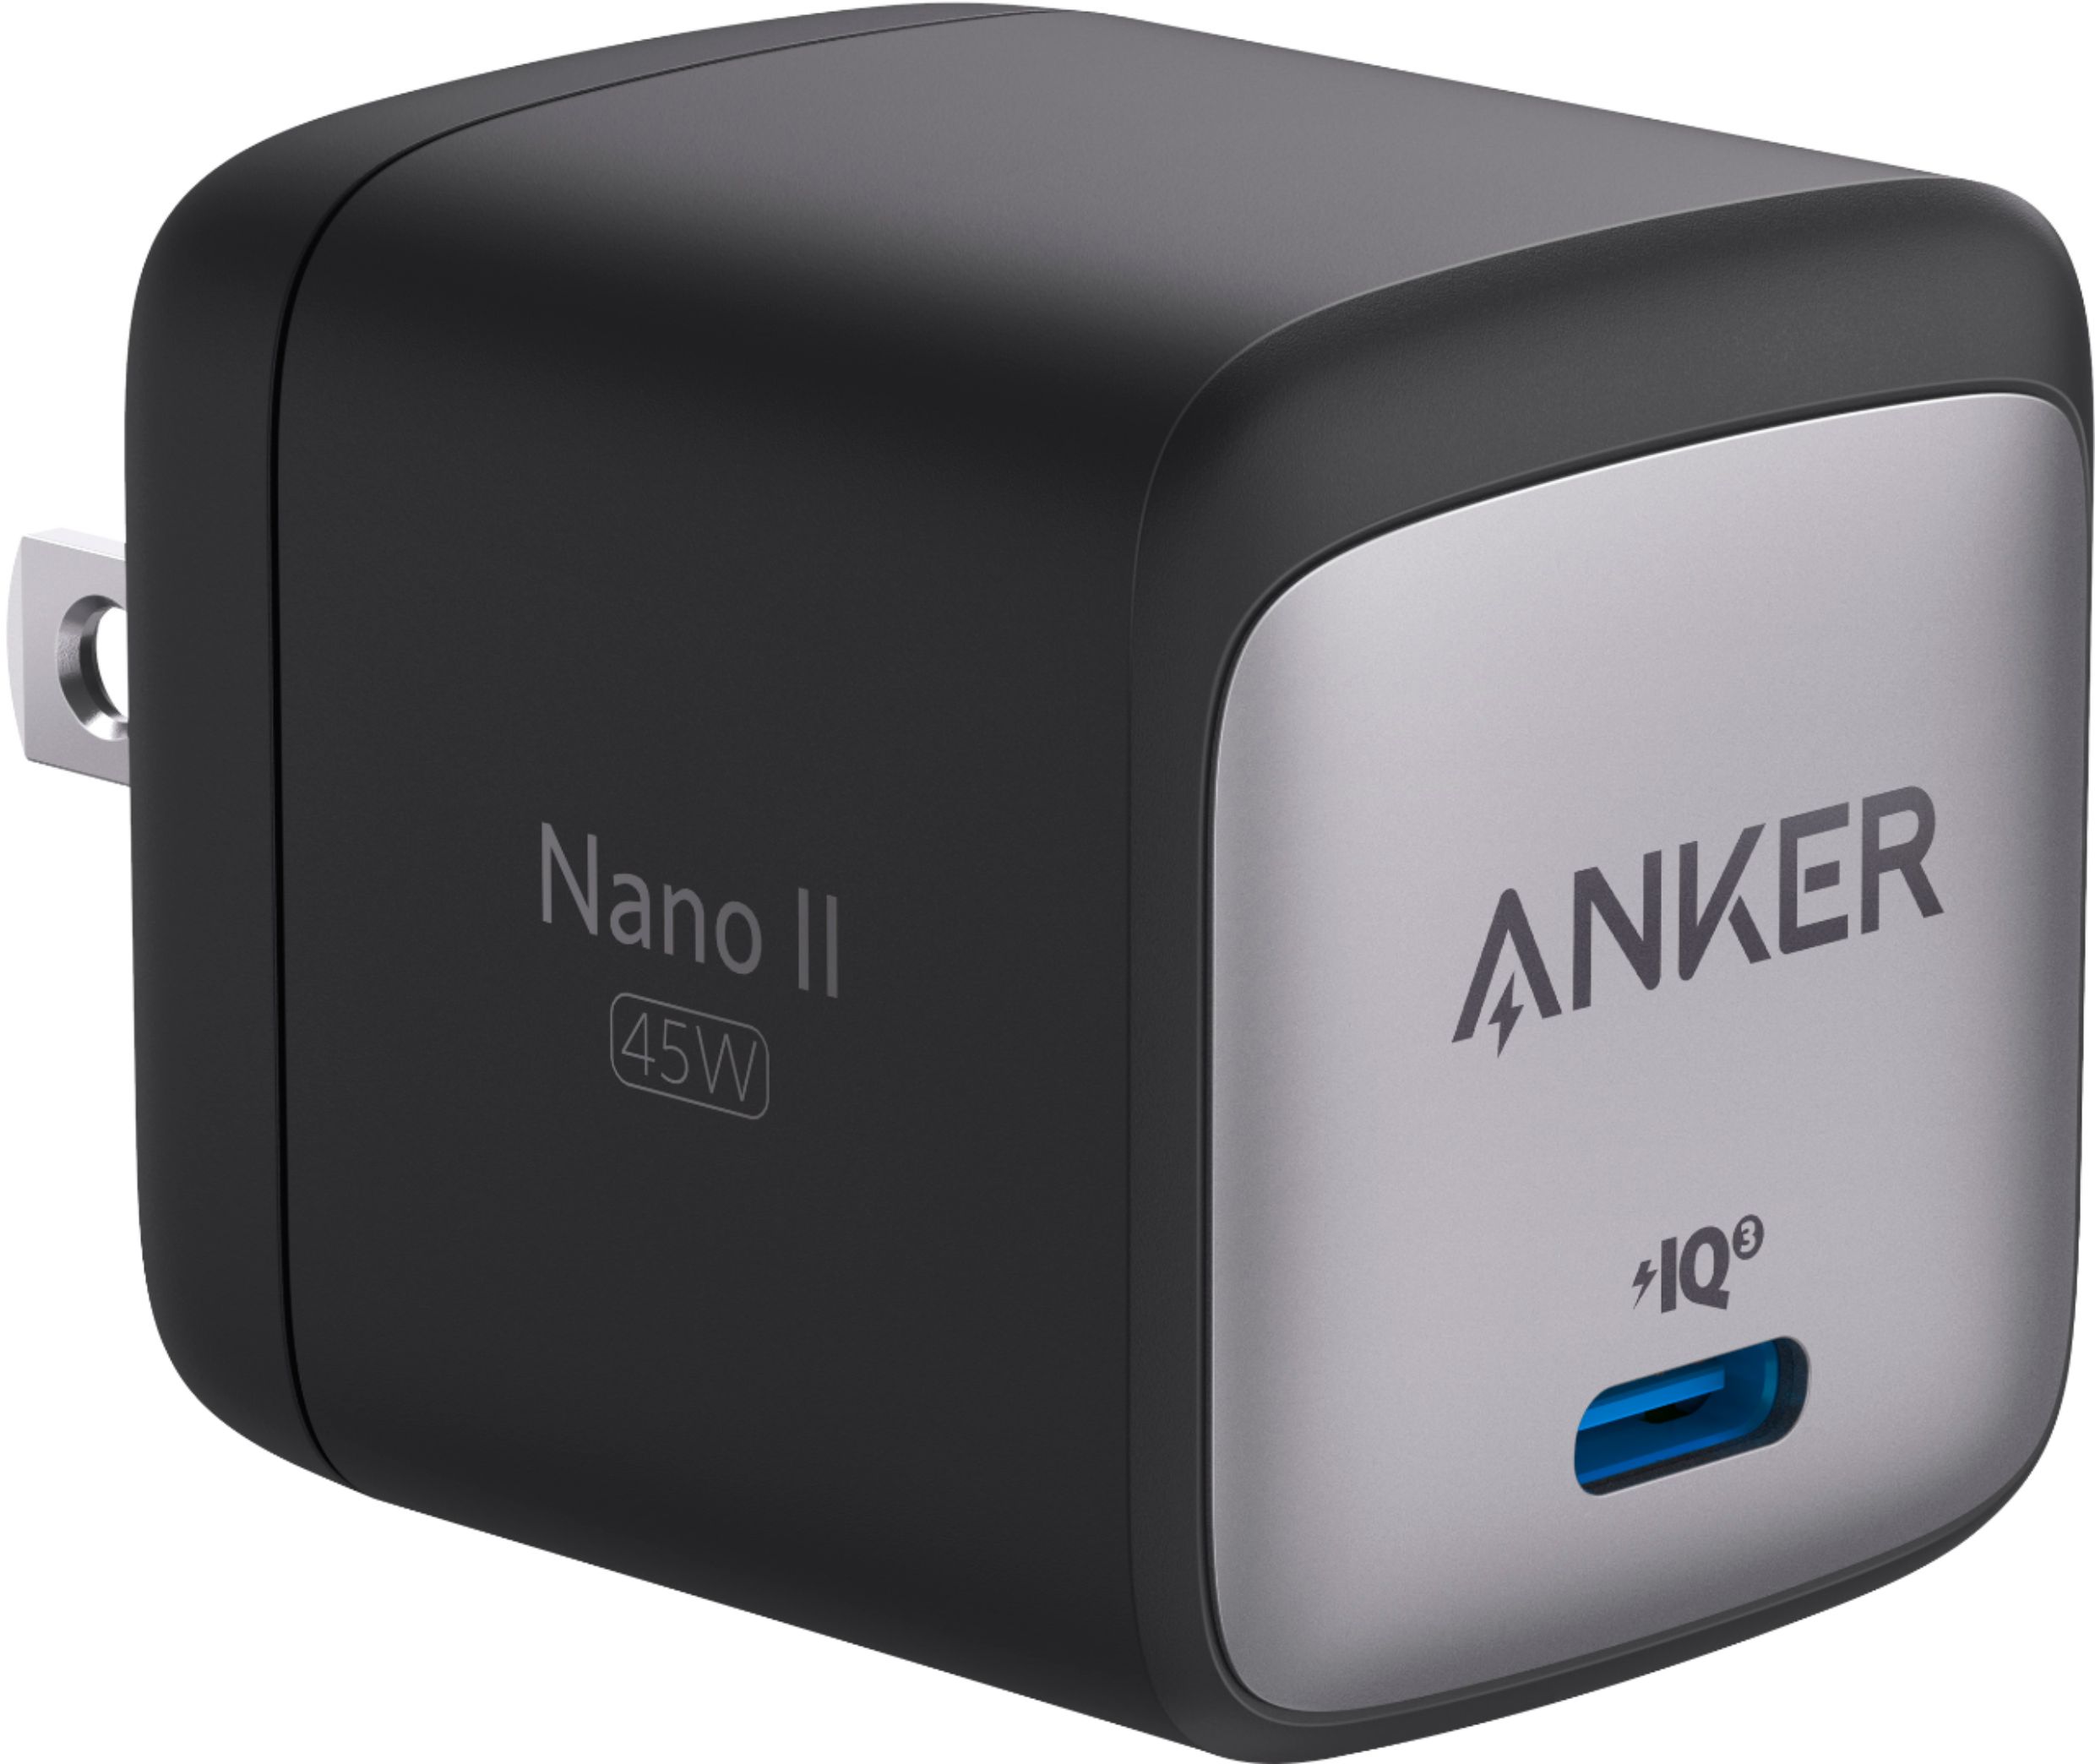  Anker USB C Charger, 713 Charger (Nano II 45W), GaN II